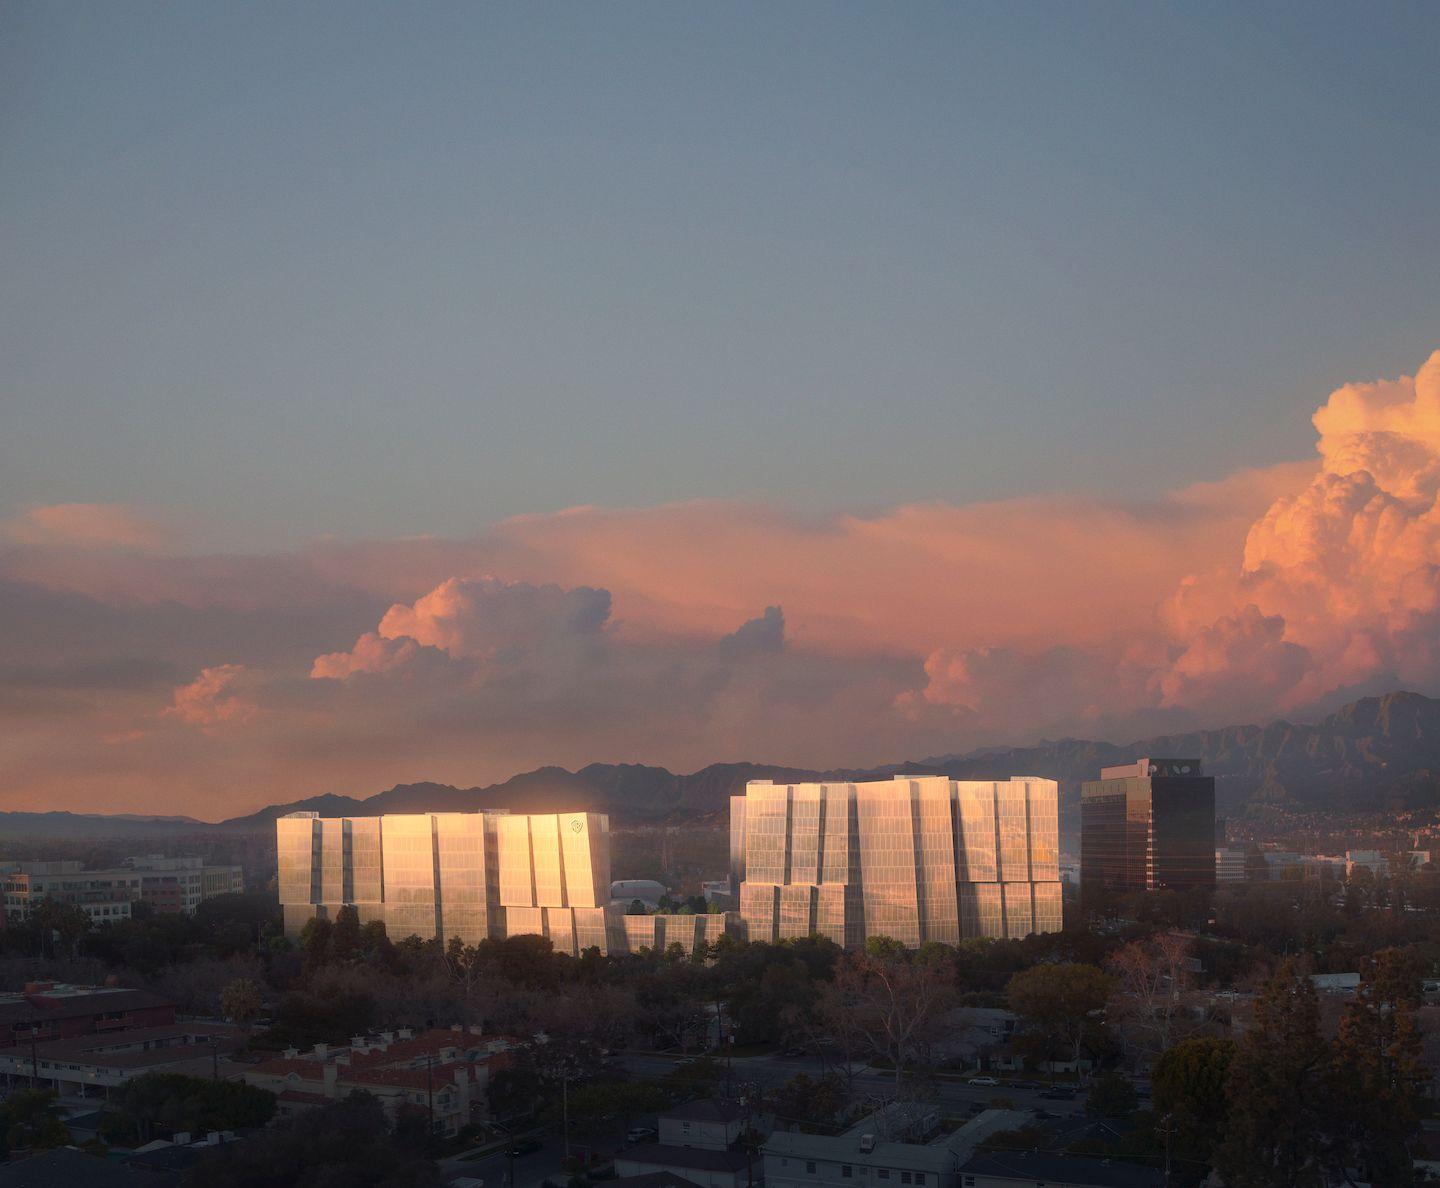 Frank Gehry Designs New Warner Bros Office In Los Angeles